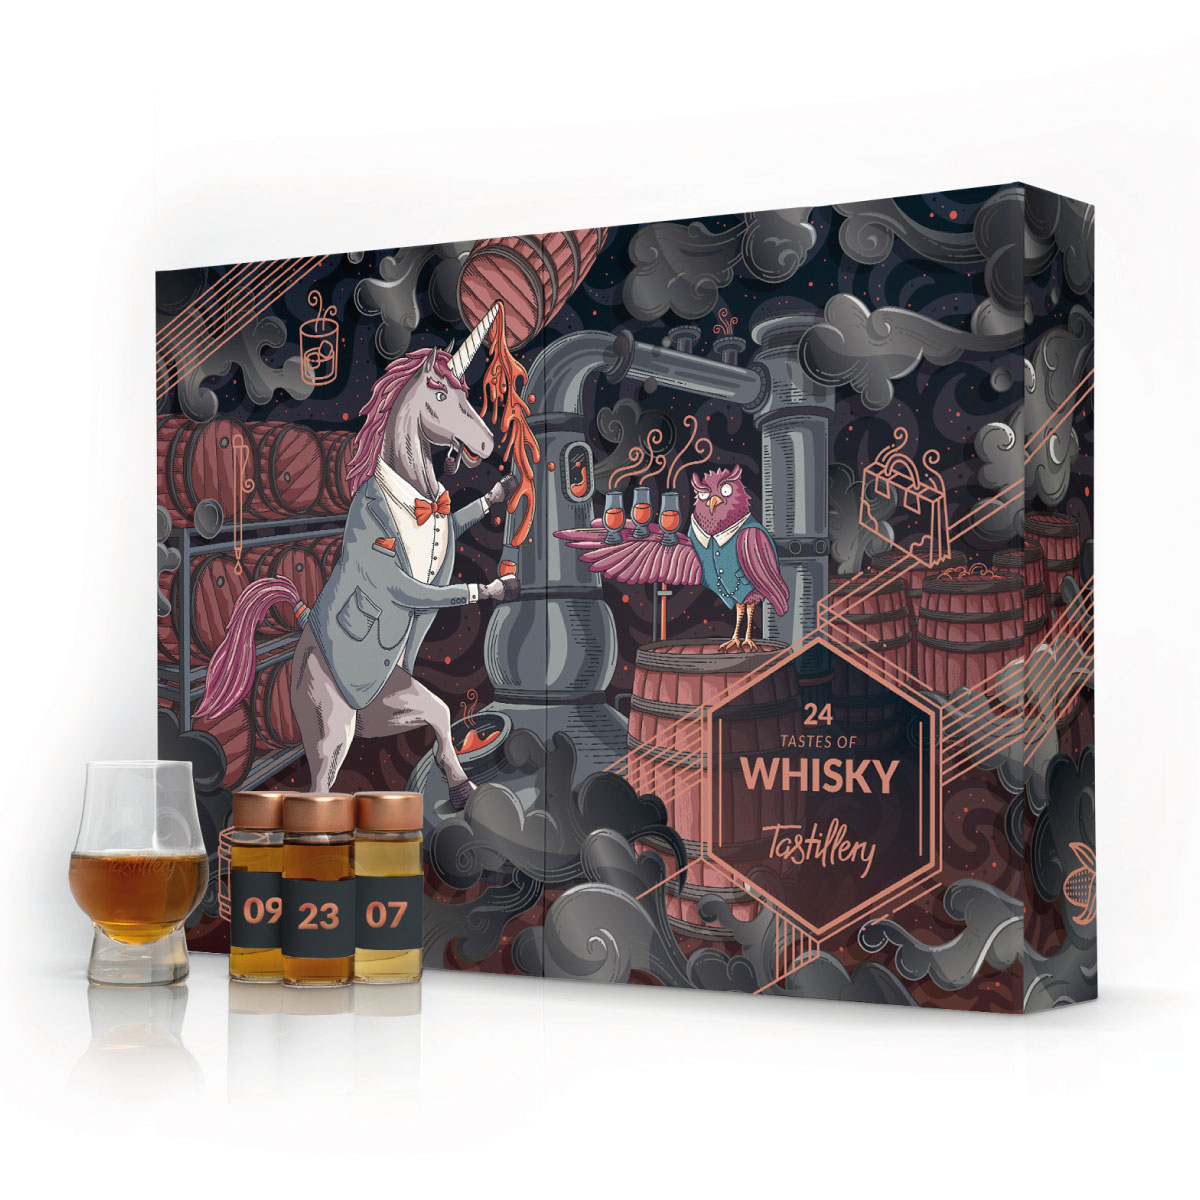 Whisky-Adventskalender - Tastillery 